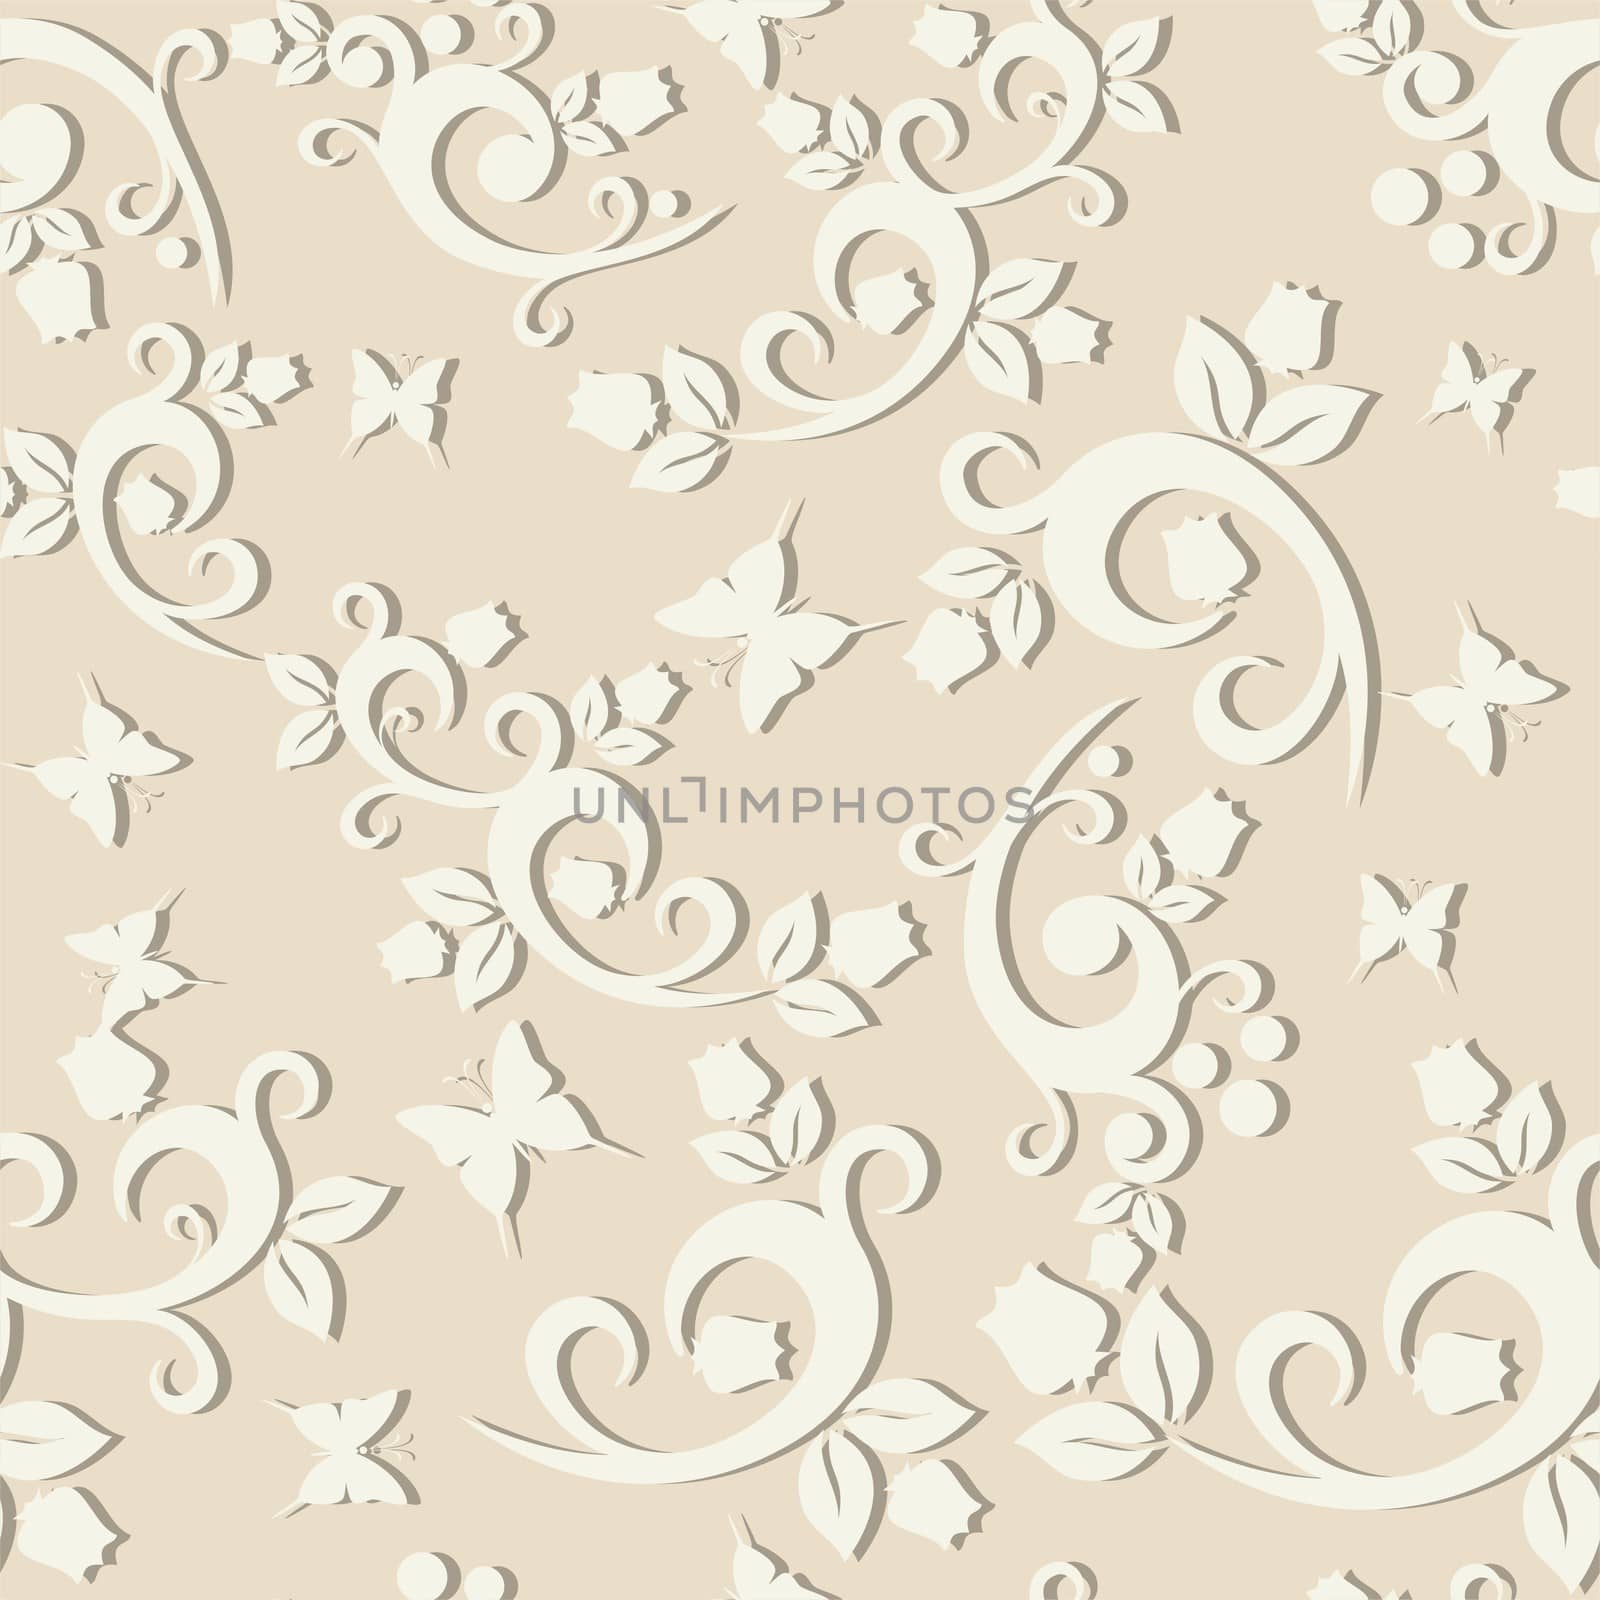 elegant floral vintage seamless pattern background for your design